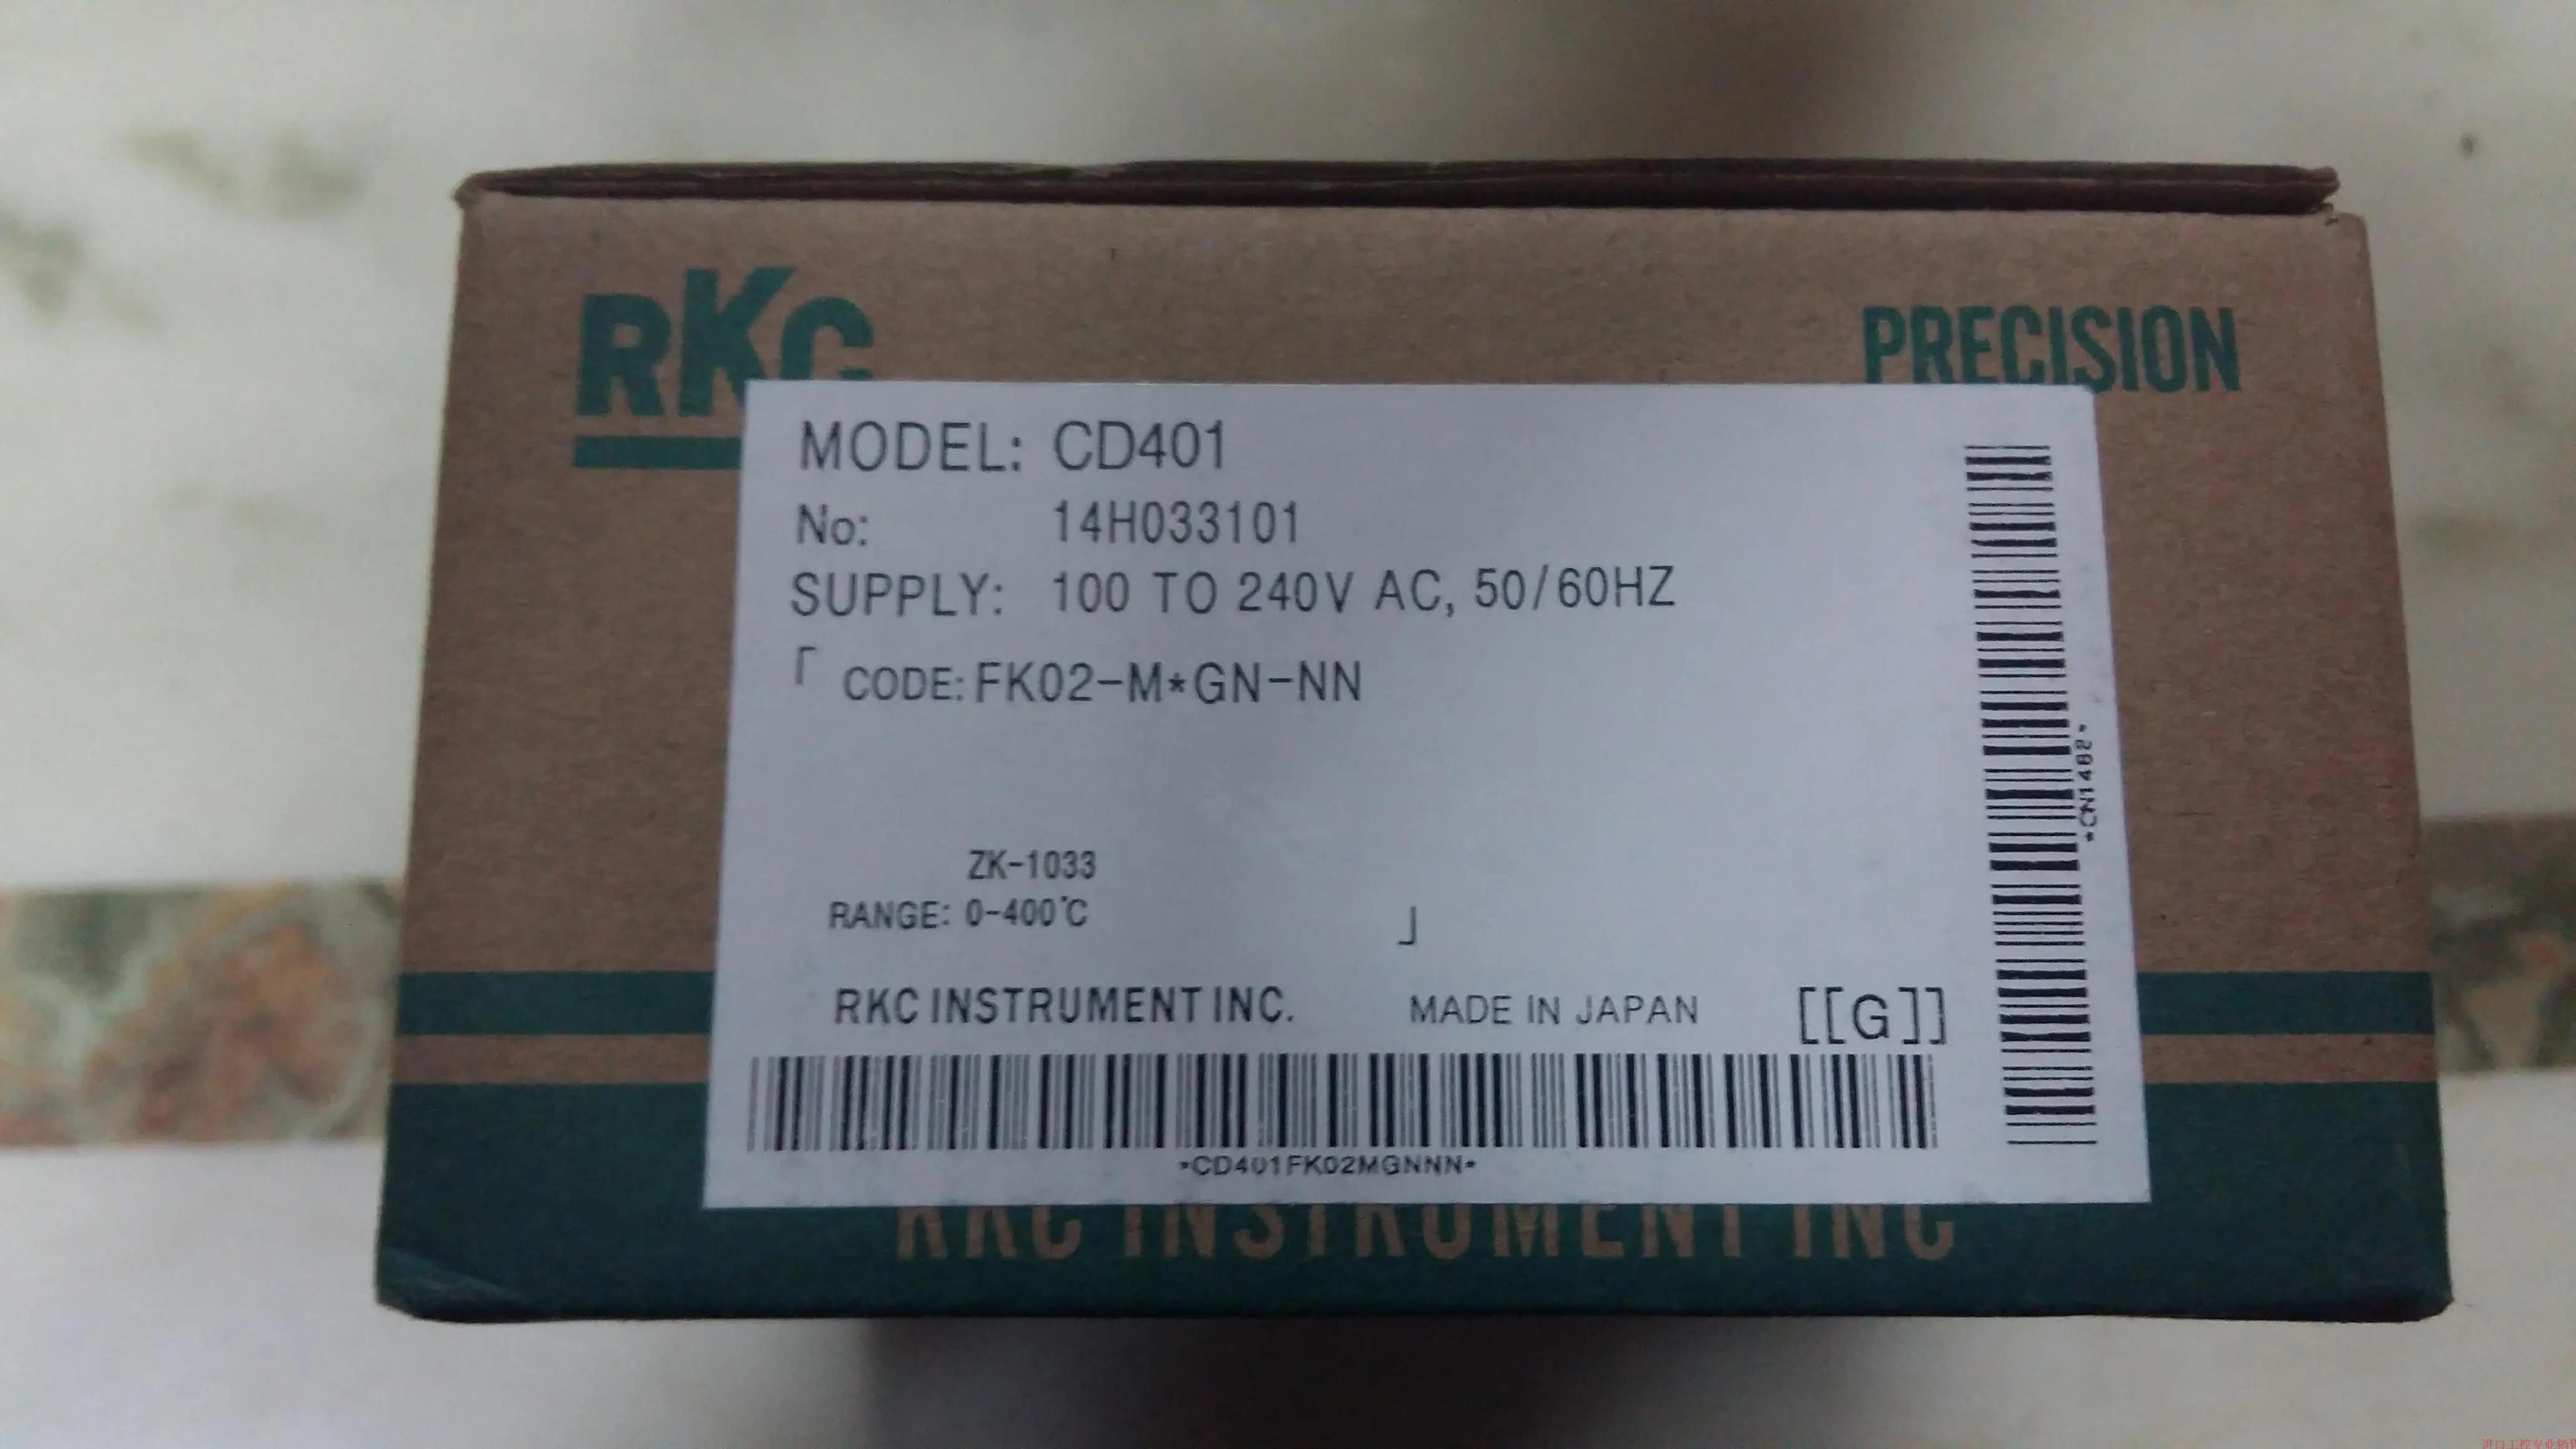  RKC µ , CD401FK02-M * GN-NN, ǰ